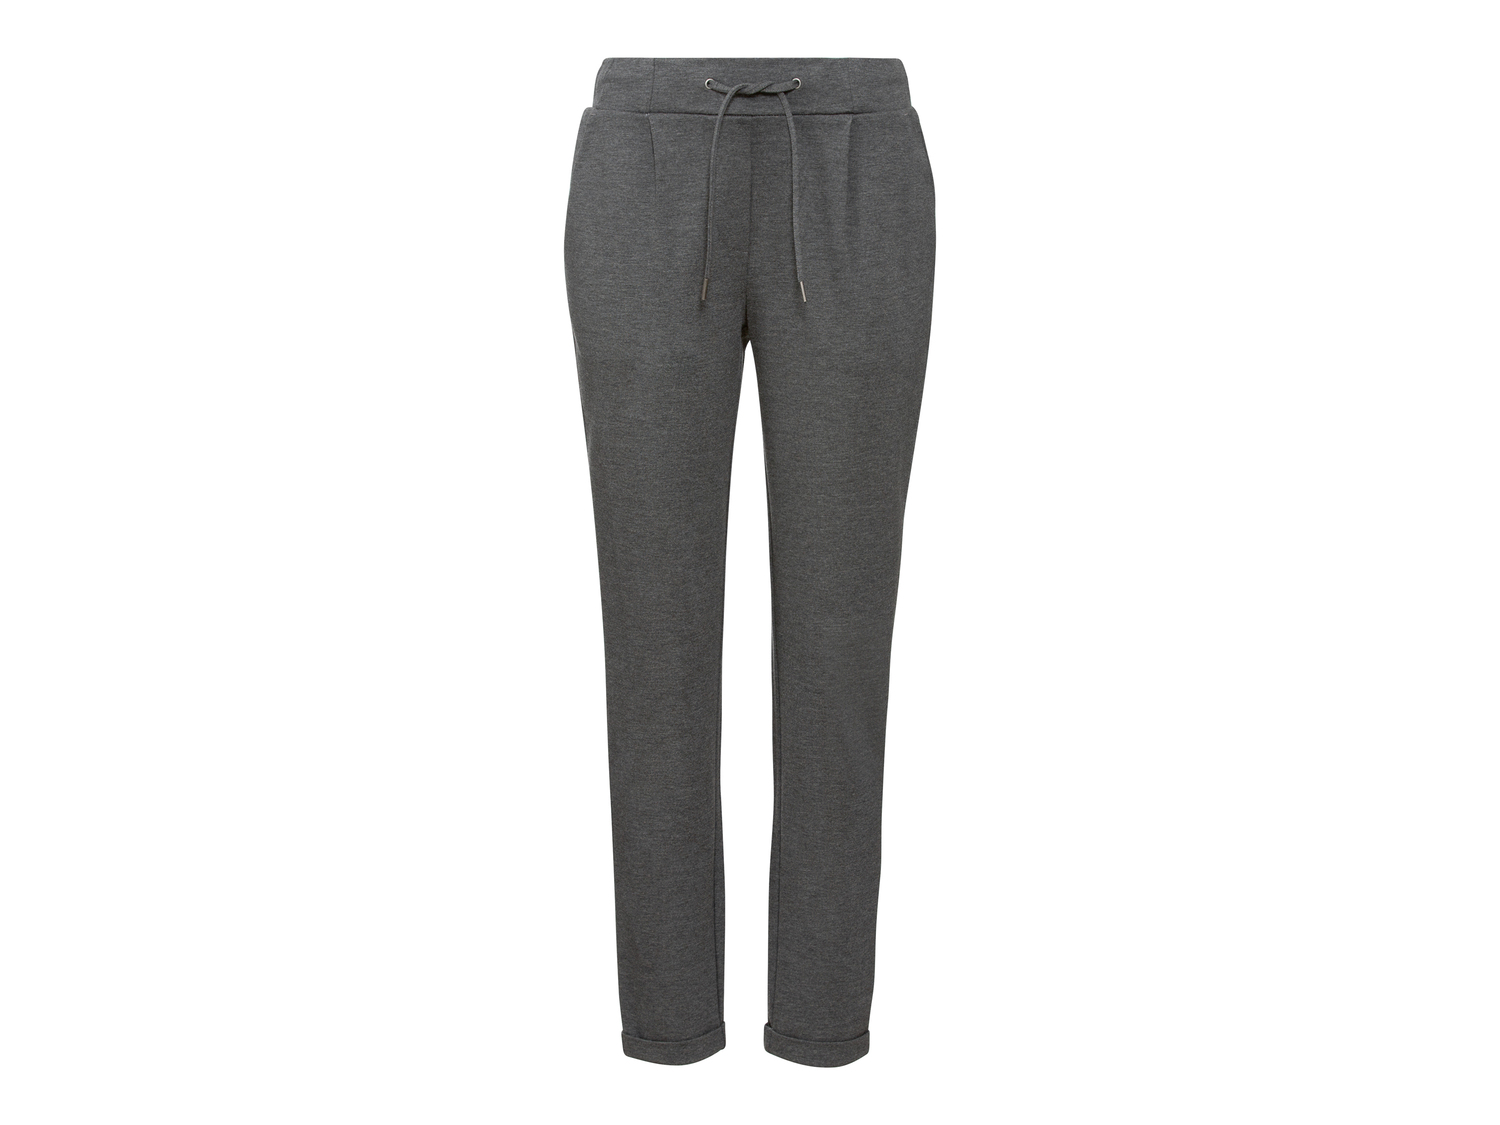 Pantaloni da donna Esmara, prezzo 9.99 &#8364; 
Misure: S-L
Taglie disponibili

Caratteristiche

- ...